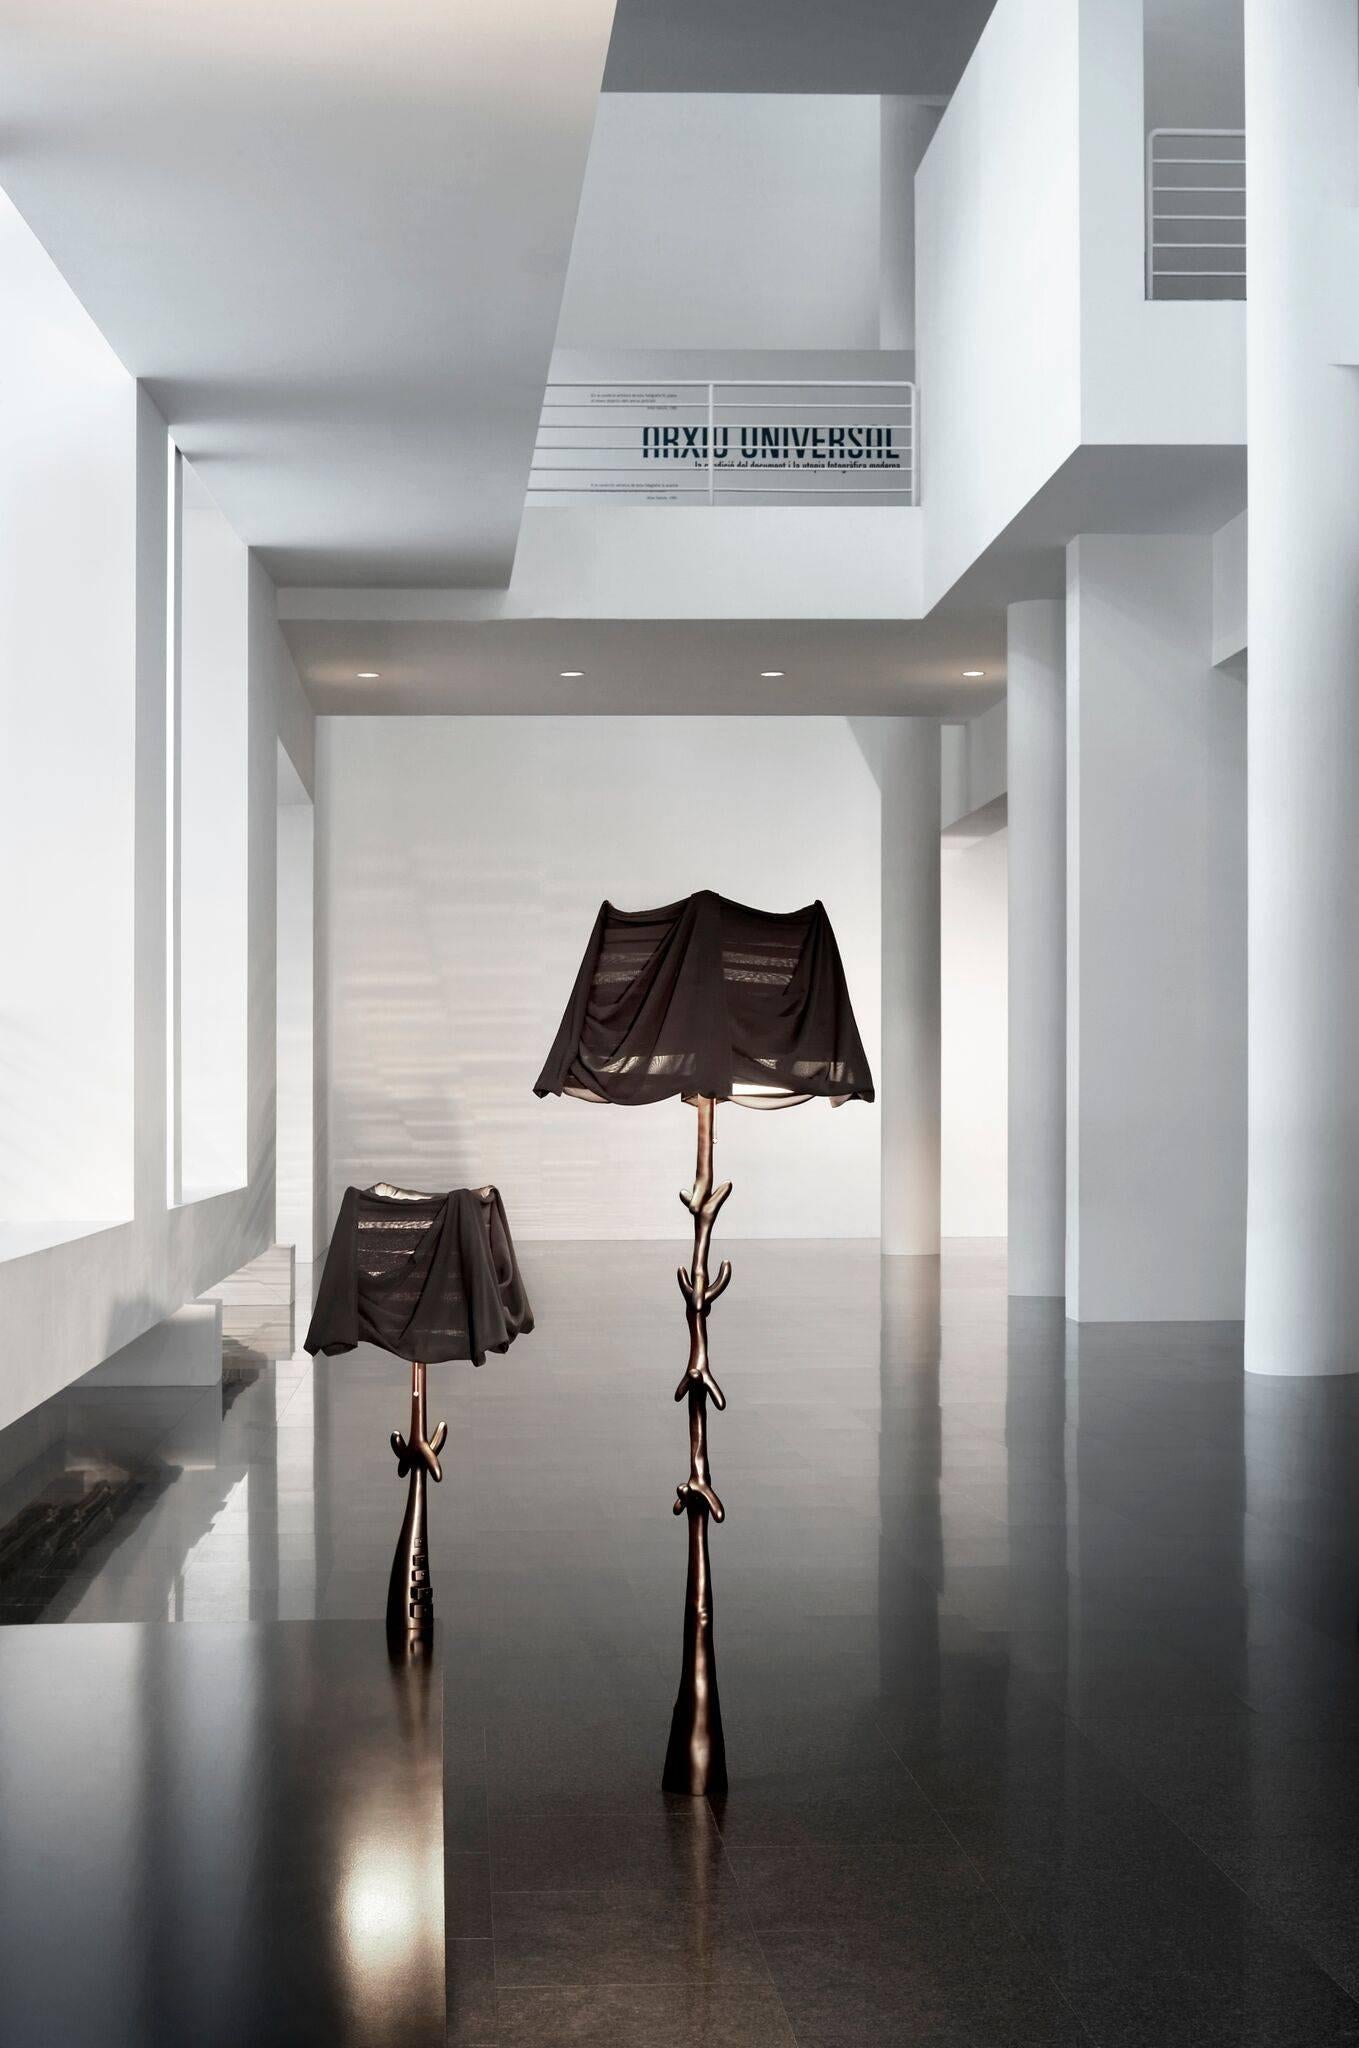 Muletas Limited Edition Lampe von Salvador Dali entworfen von BD Möbel in Barcelona hergestellt.

Limitierte Auflage
Gefärbter Lindenholz-Satin in Schwarz.
Lampenschirm aus transparentem schwarzem Chiffon.

Raffinierte MATERIALIEN und handwerkliche